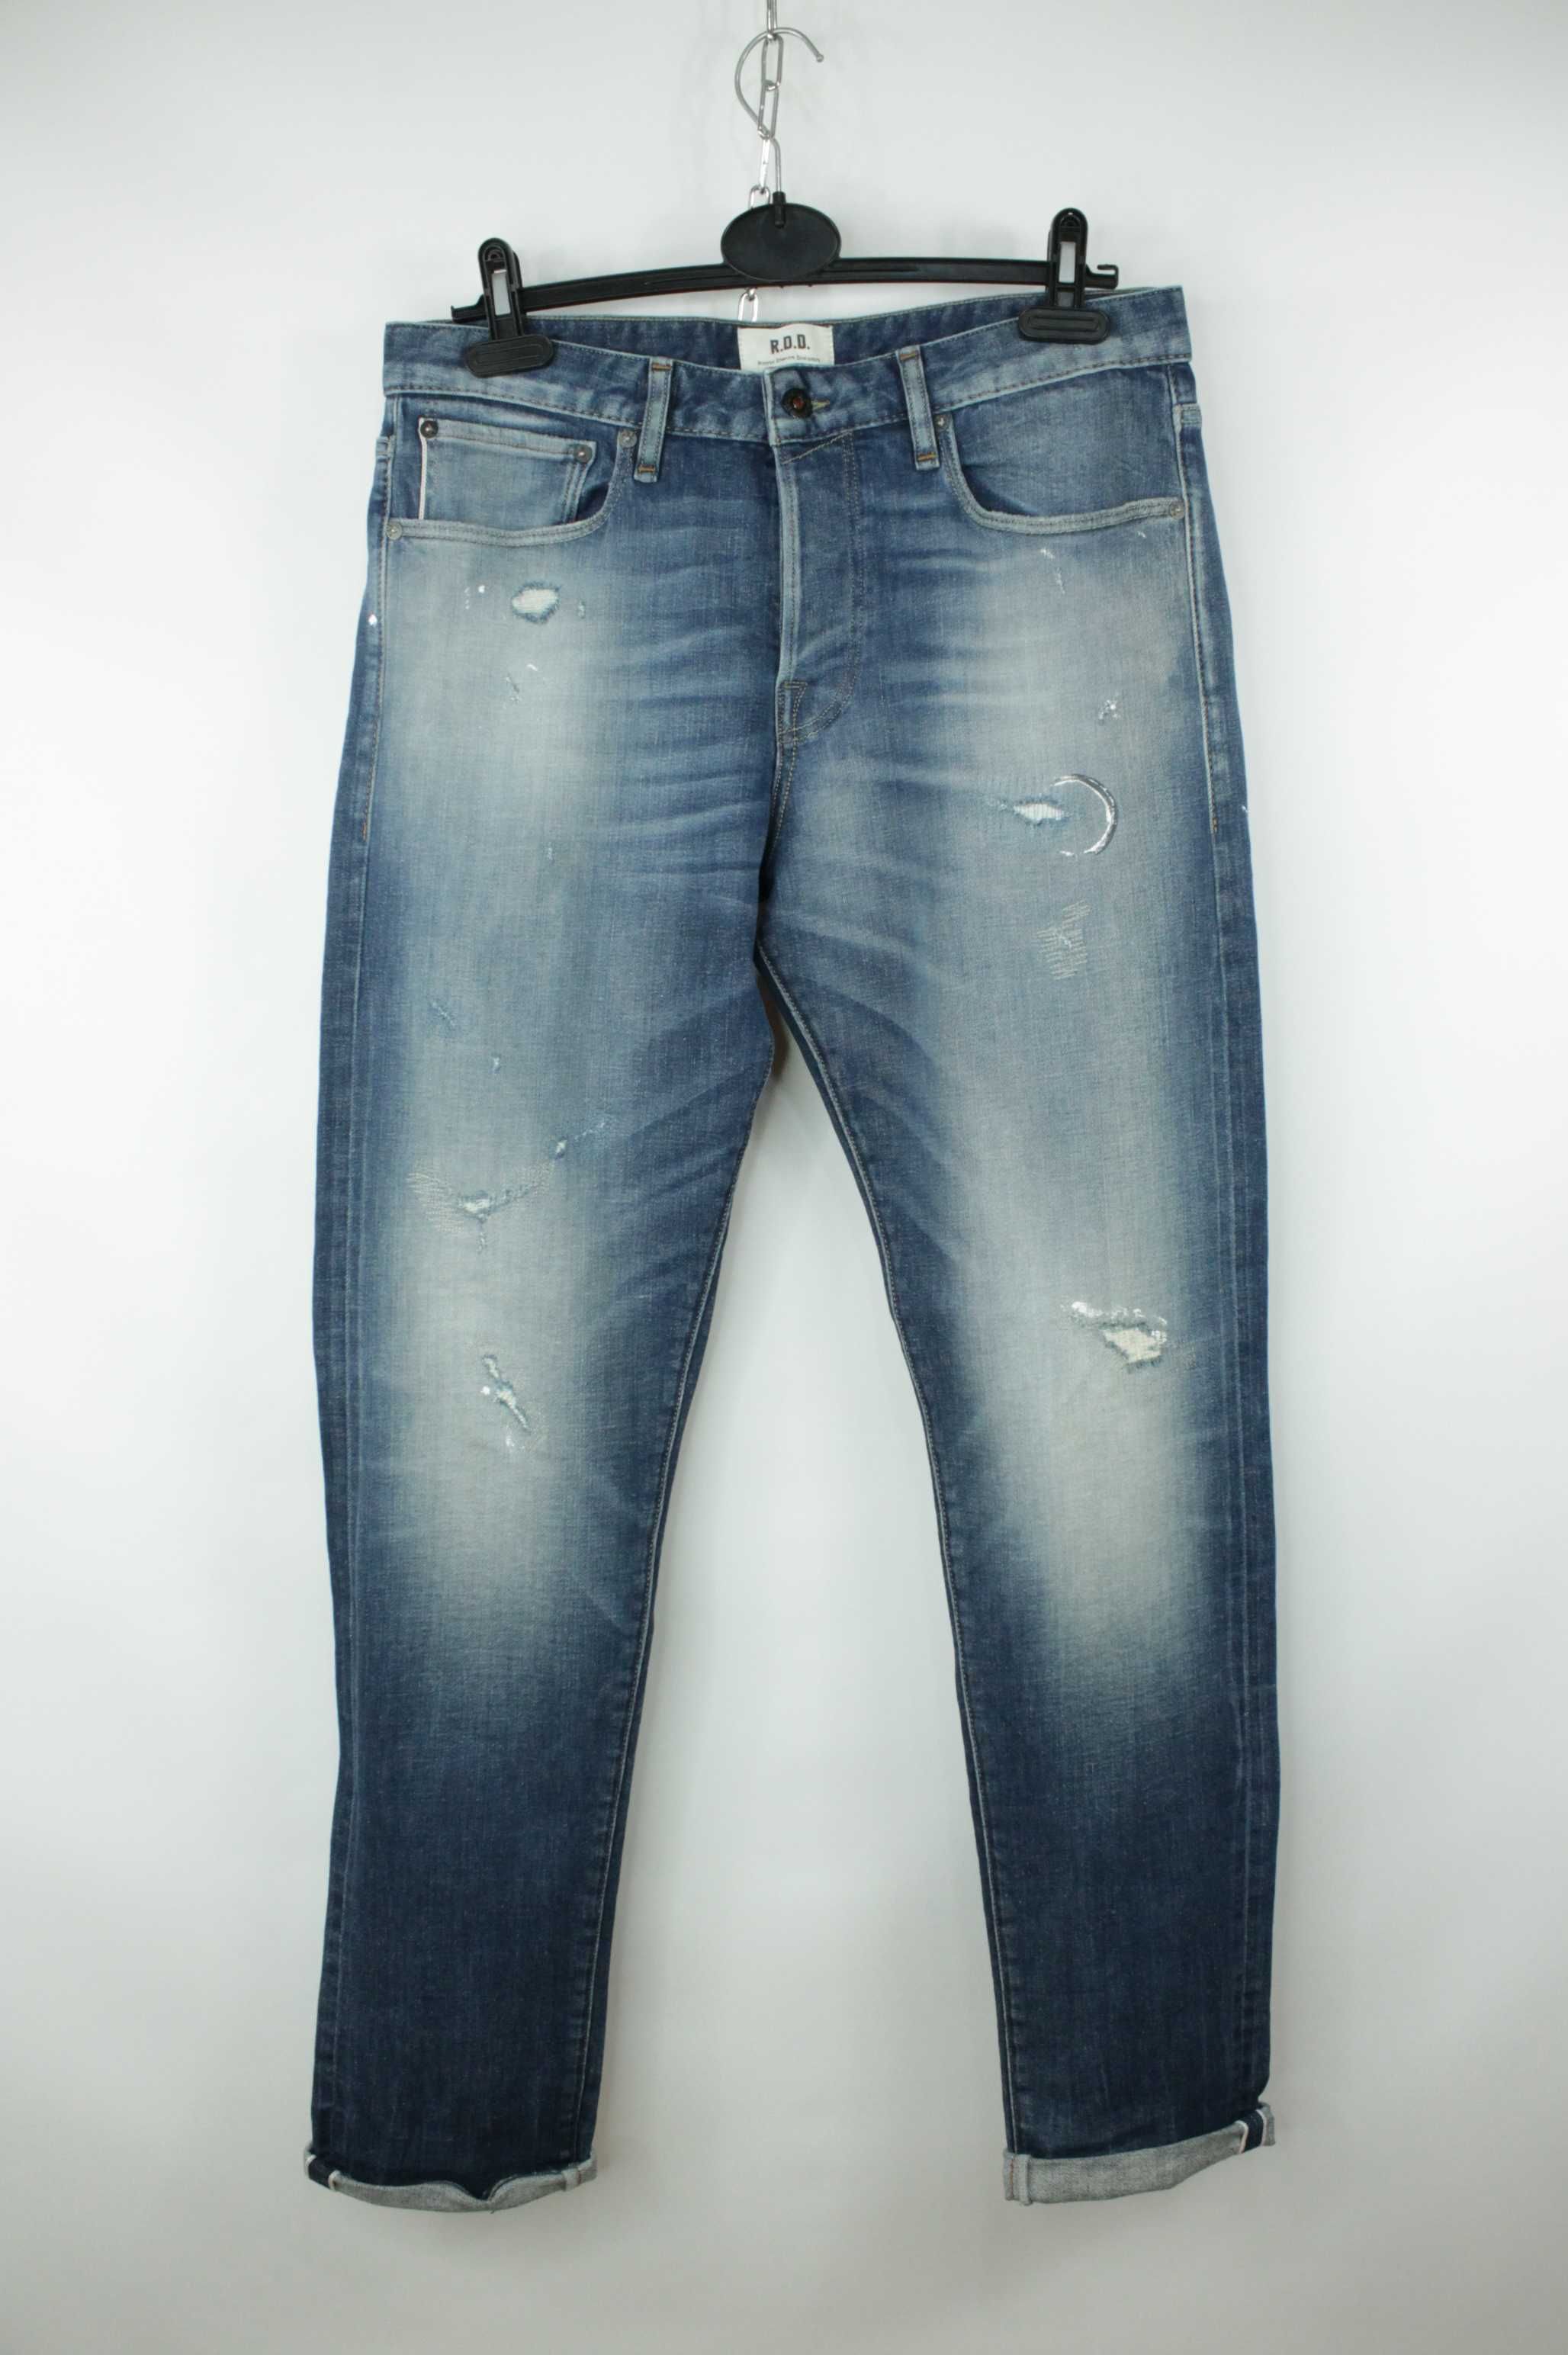 Шикарні джинси на літо Jack&Jones Gleen Royal Selvedge Розмір W32/L32